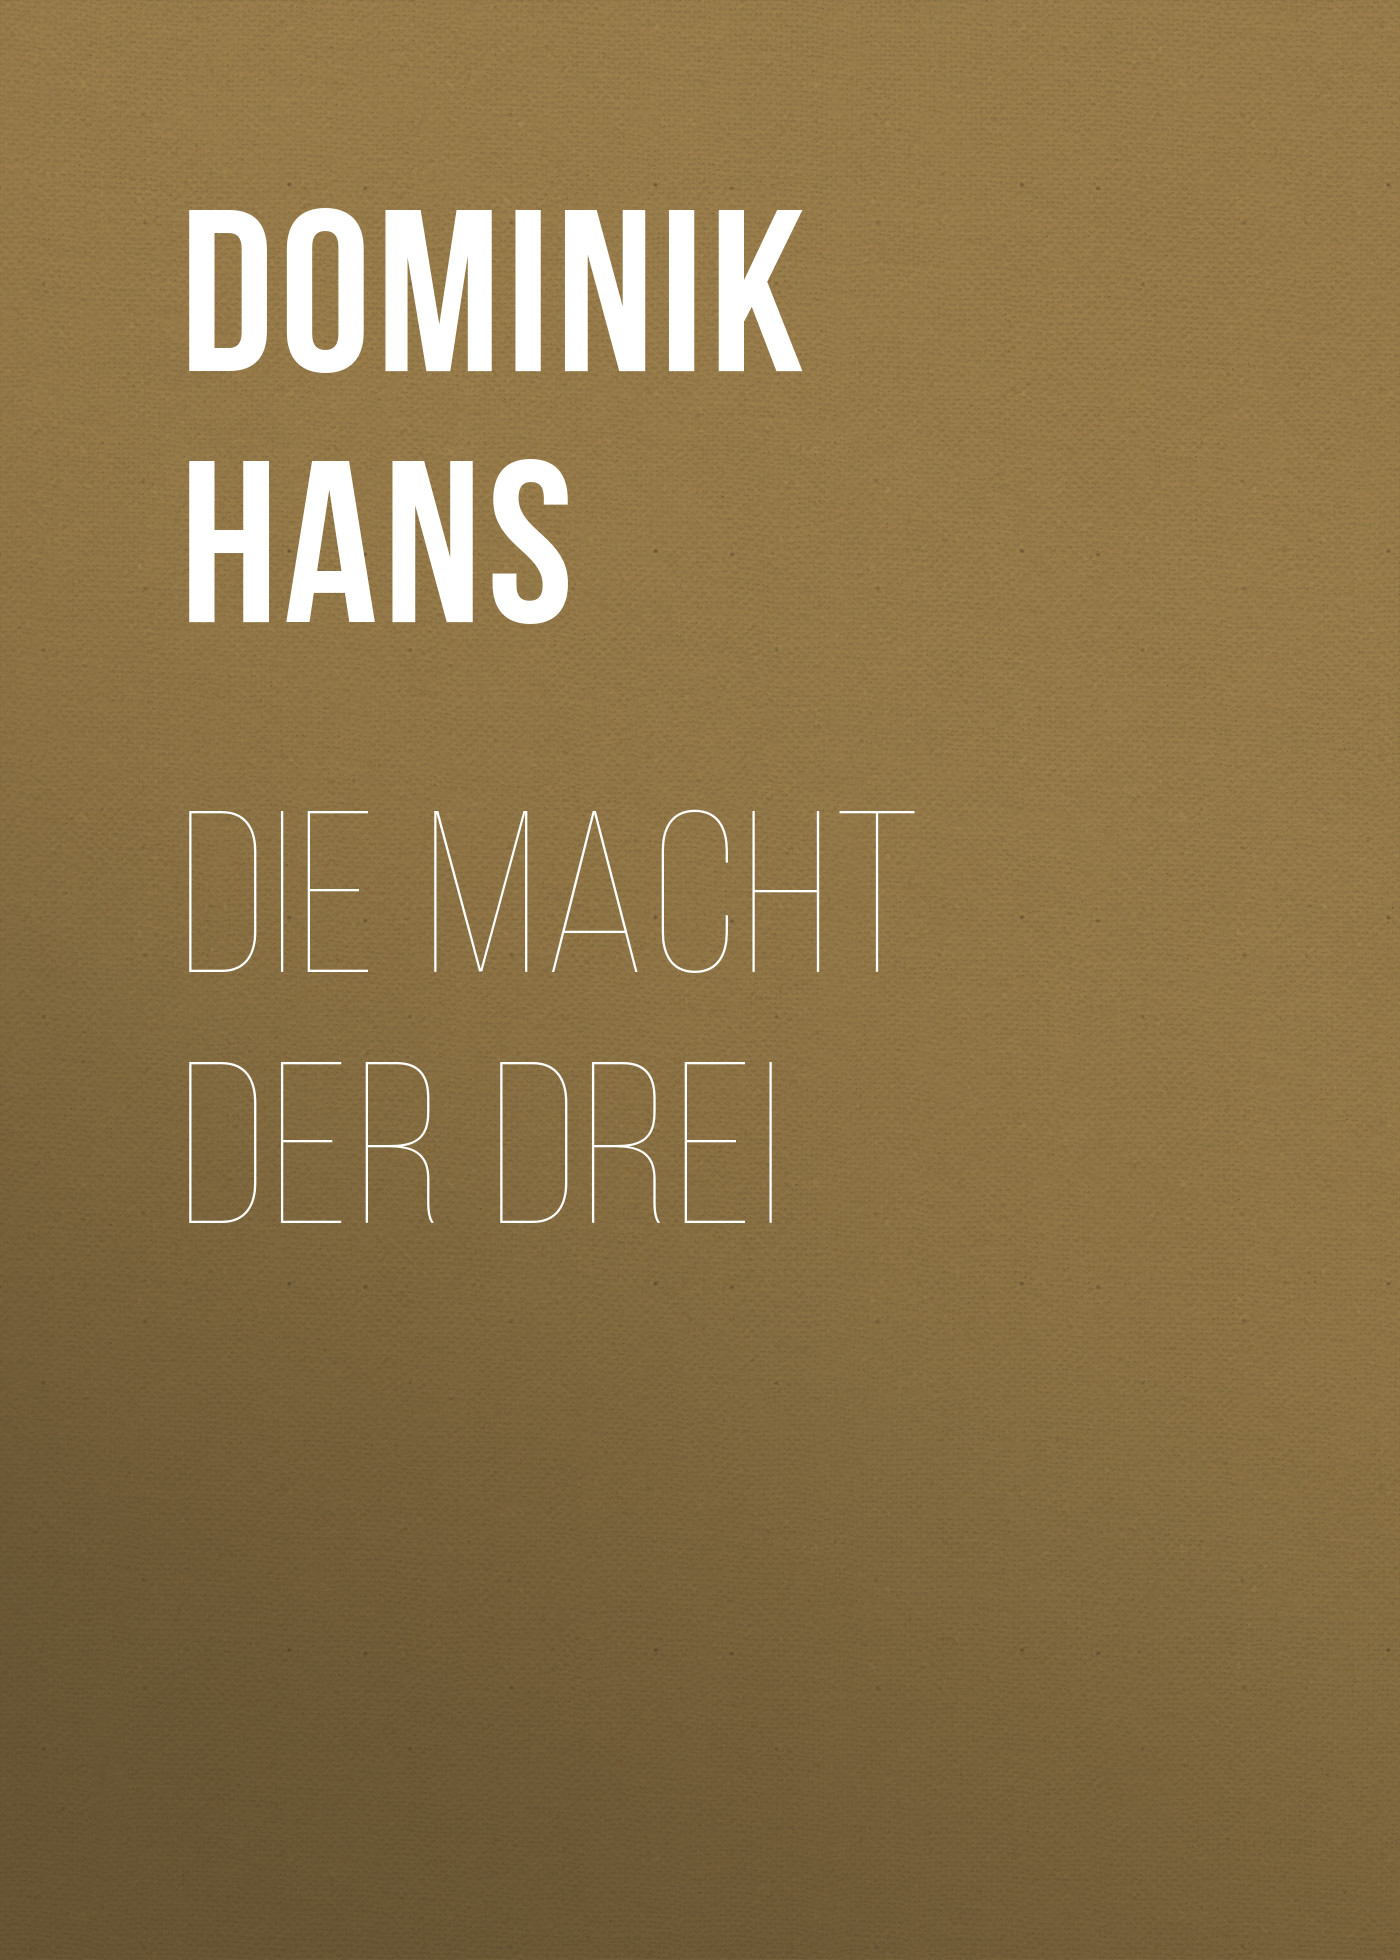 Книга Die Macht der Drei из серии , созданная Hans Dominik, может относится к жанру Зарубежная старинная литература, Зарубежная классика. Стоимость электронной книги Die Macht der Drei с идентификатором 24621693 составляет 0 руб.